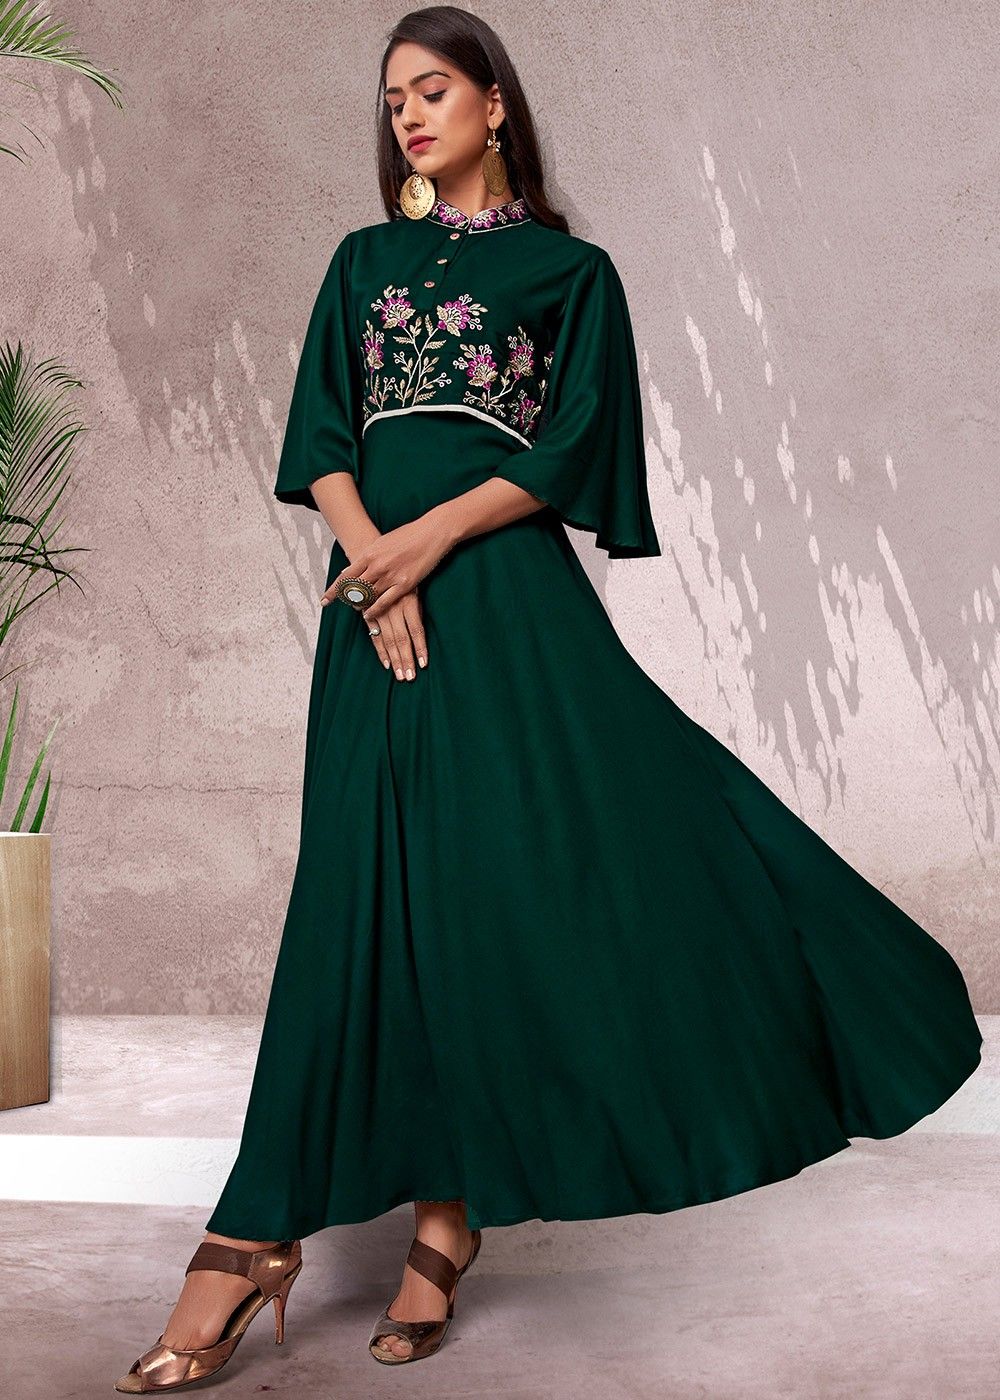 Indo-Western Party Wear For Women in Green Color: Buy Online | Utsav Fashion